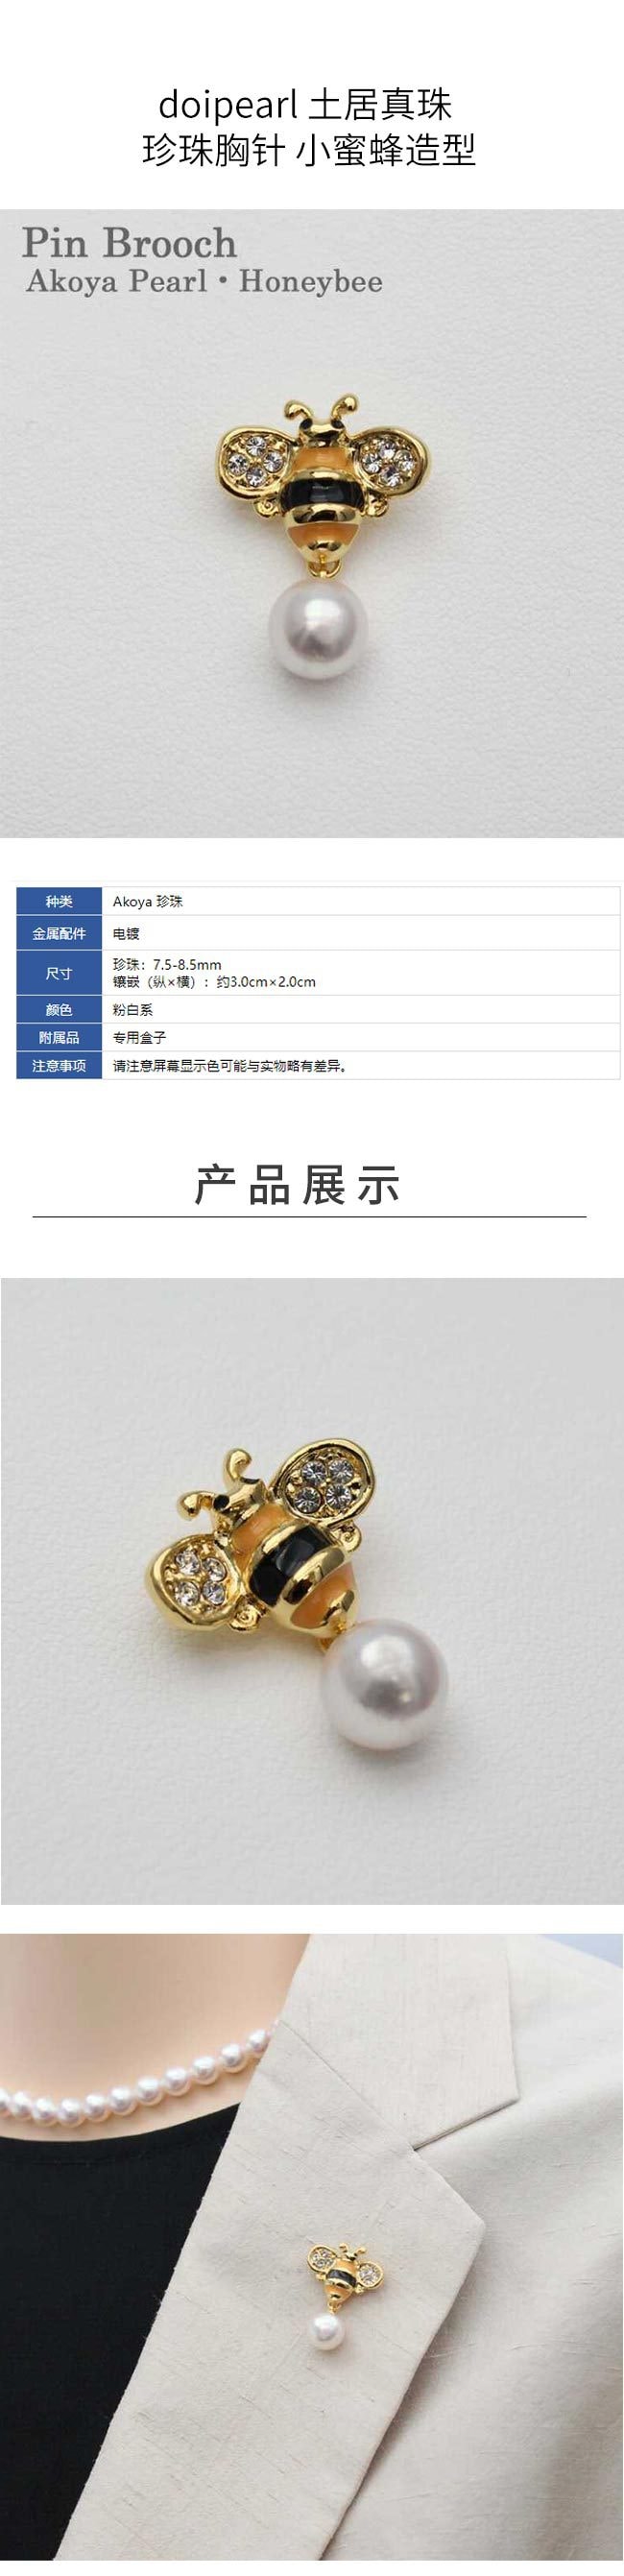 【日本直邮】doipearl 土居真珠 珍珠胸针 小蜜蜂造型